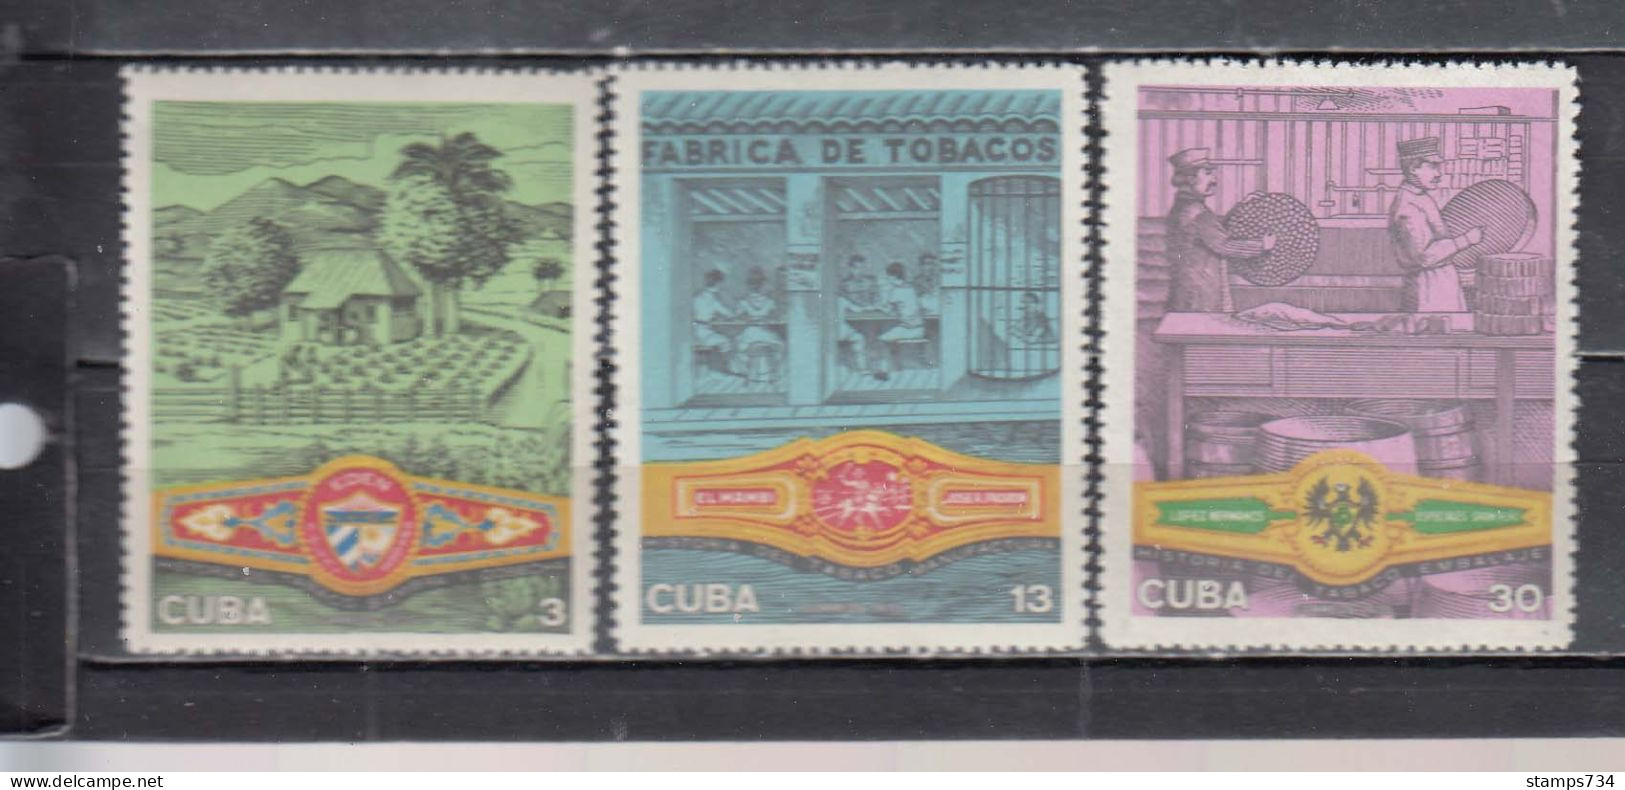 Cuba 1970 - Tobacco Industry, Mi-Nr. 1606/08, MNH** - Nuevos